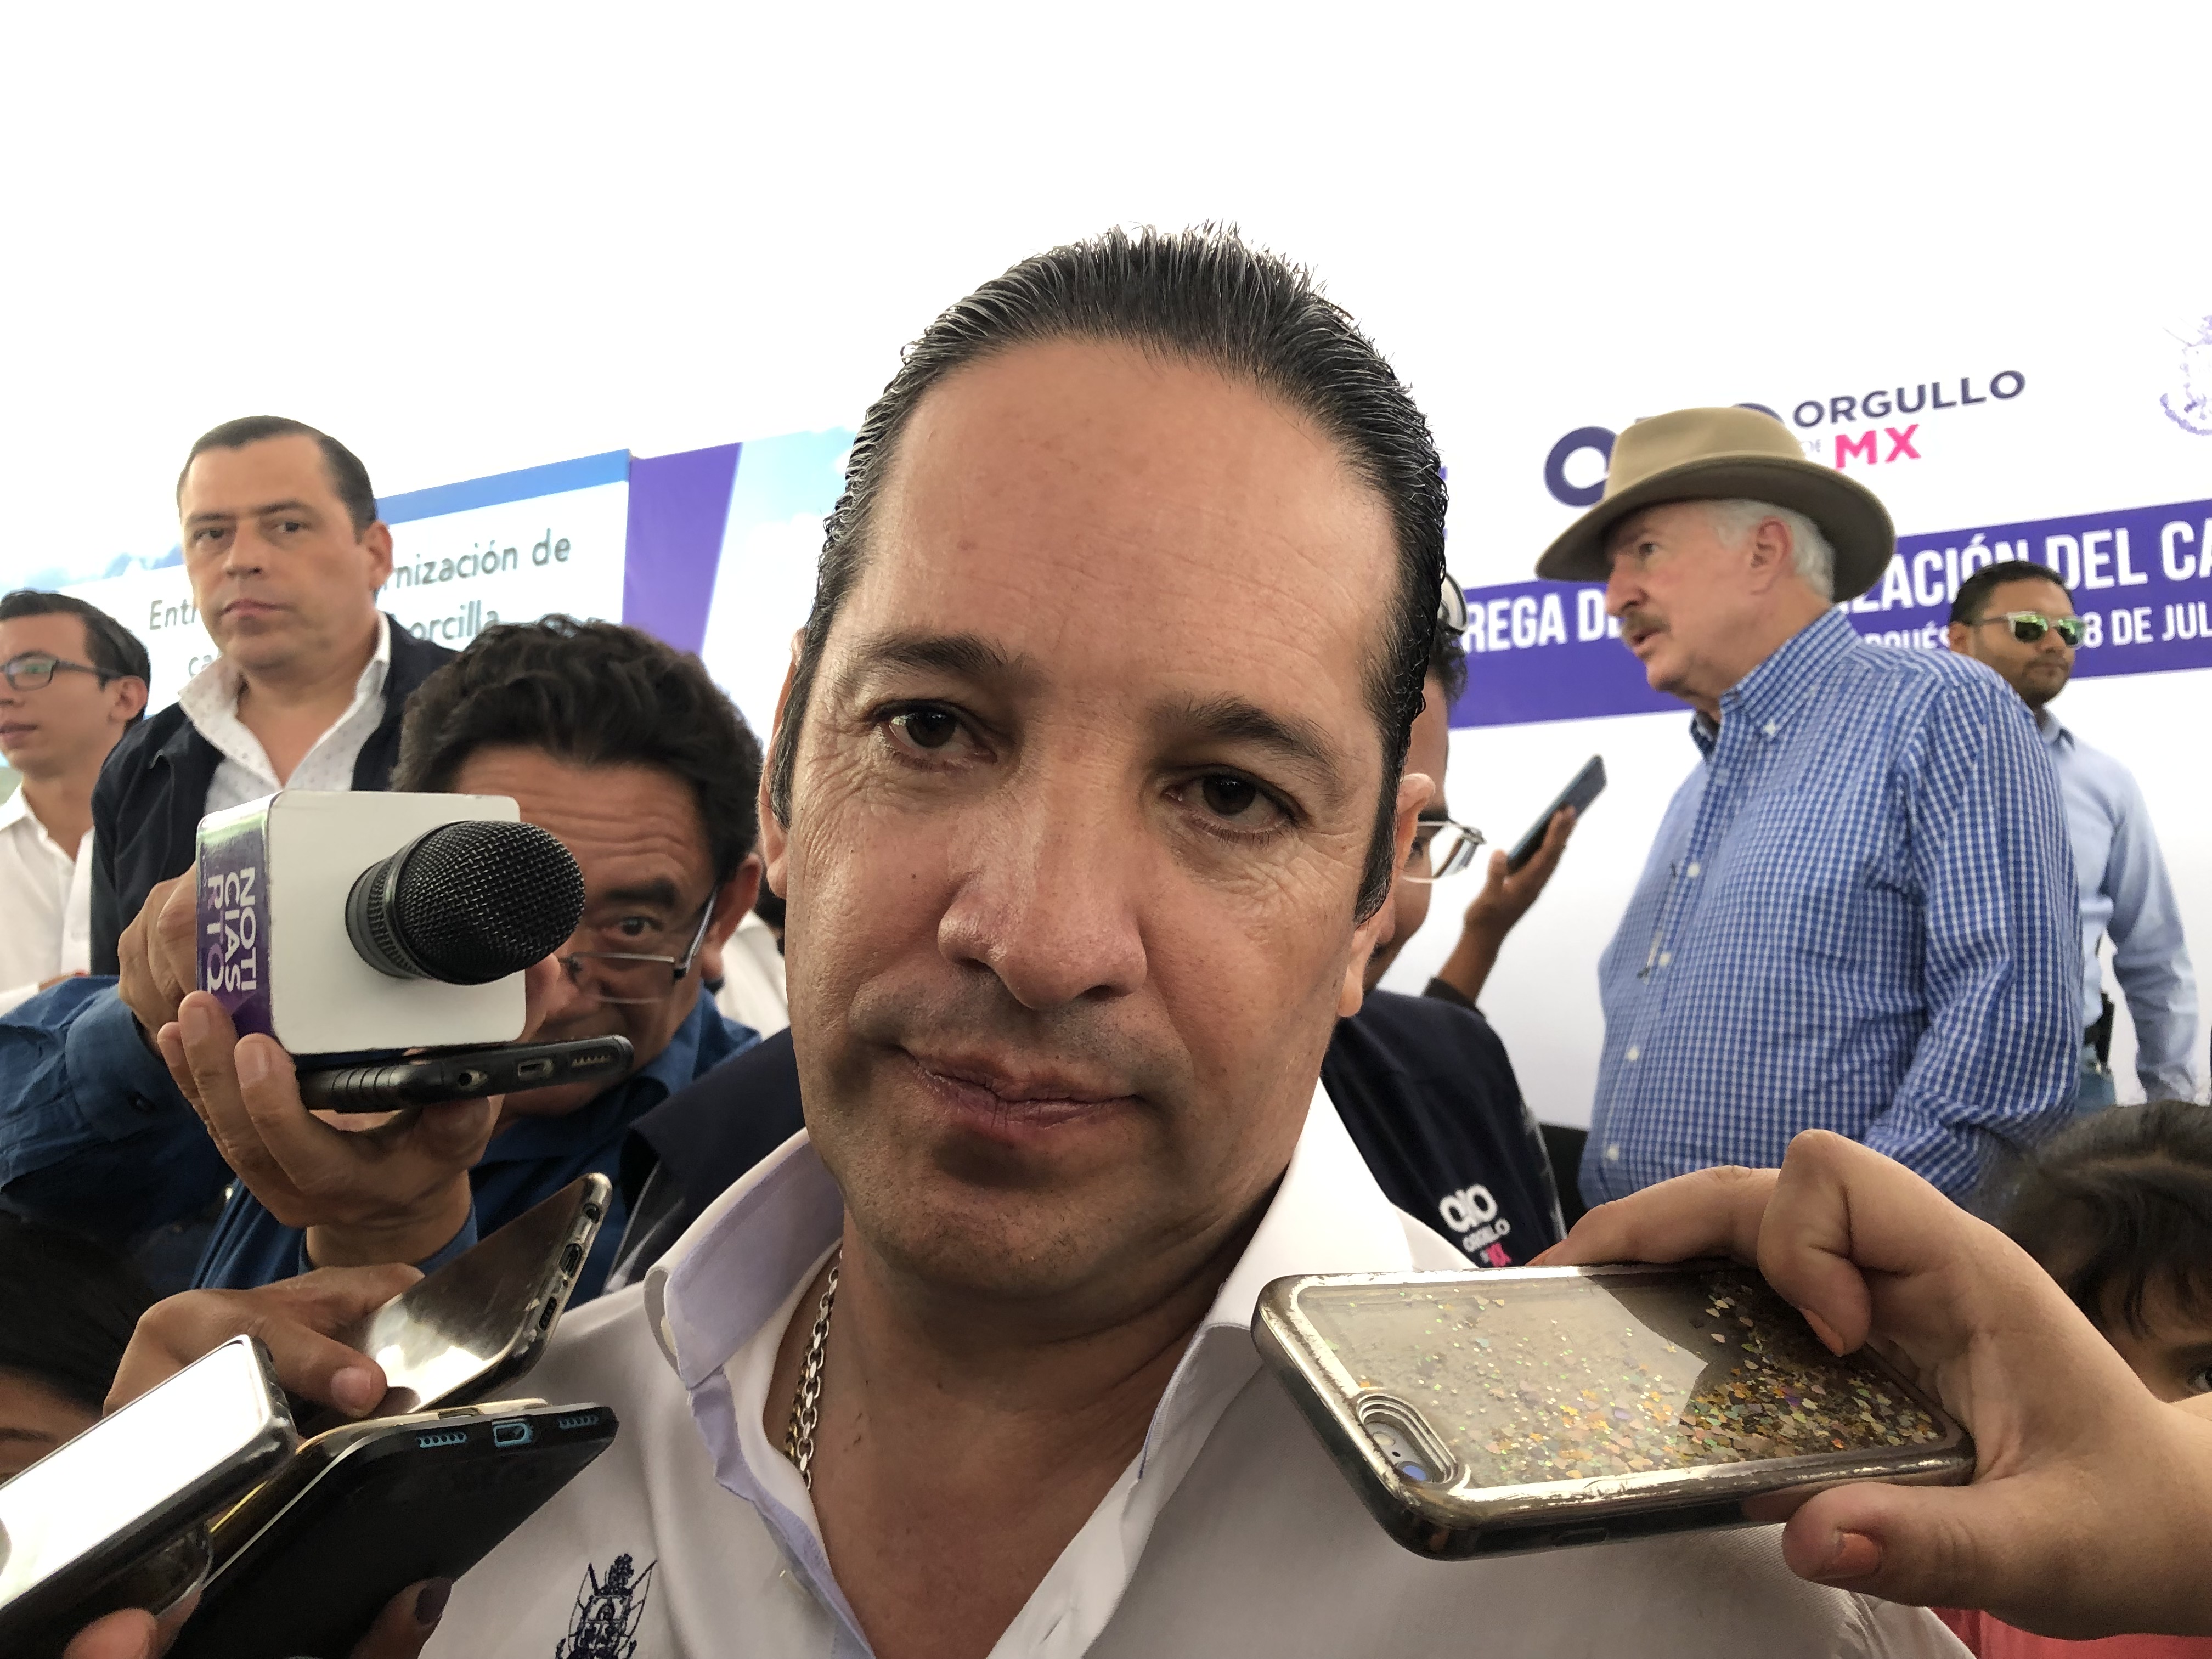  Guardia Nacional llega a Querétaro; gobernador aún desconoce cuántos elementos son